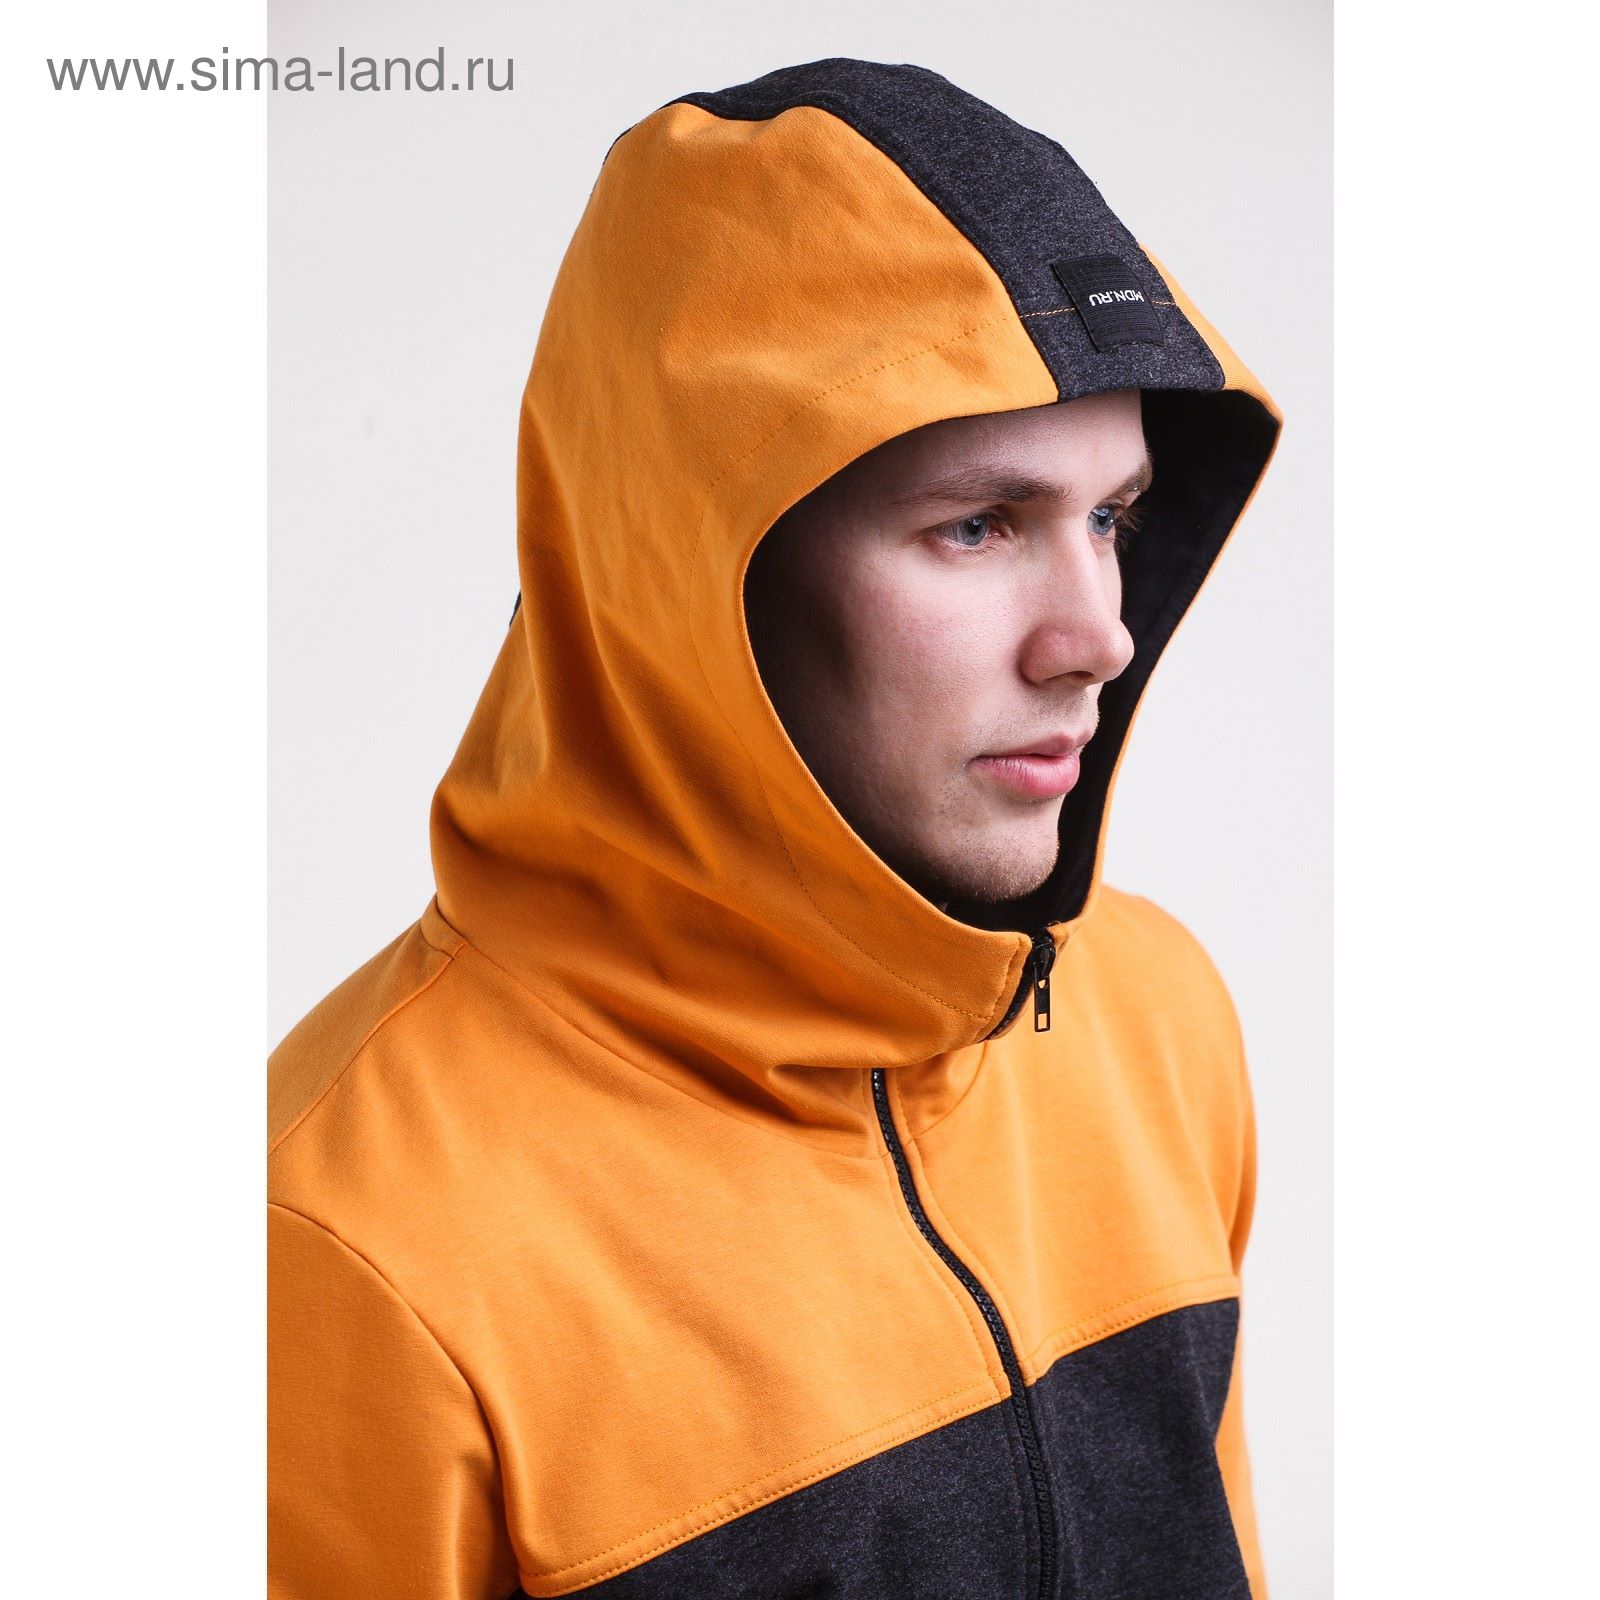 Комплект мужской (куртка+брюки), размер 48, цвет антрацит+горчичный (арт. М-759-05)